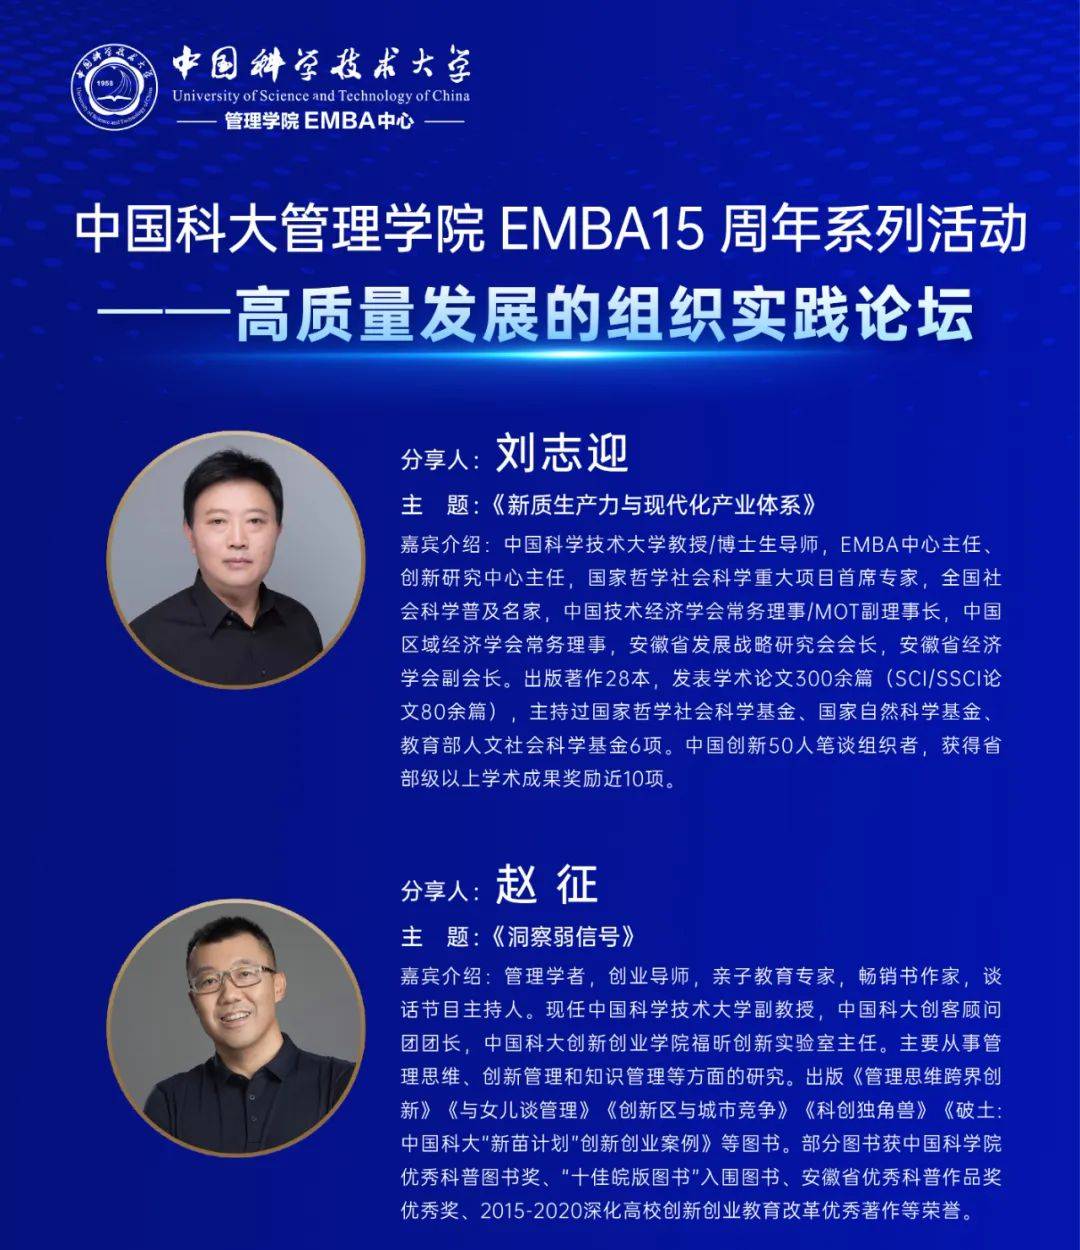 中国科大管理学院emba15周年系列活动——高质量发展的组织实践论坛